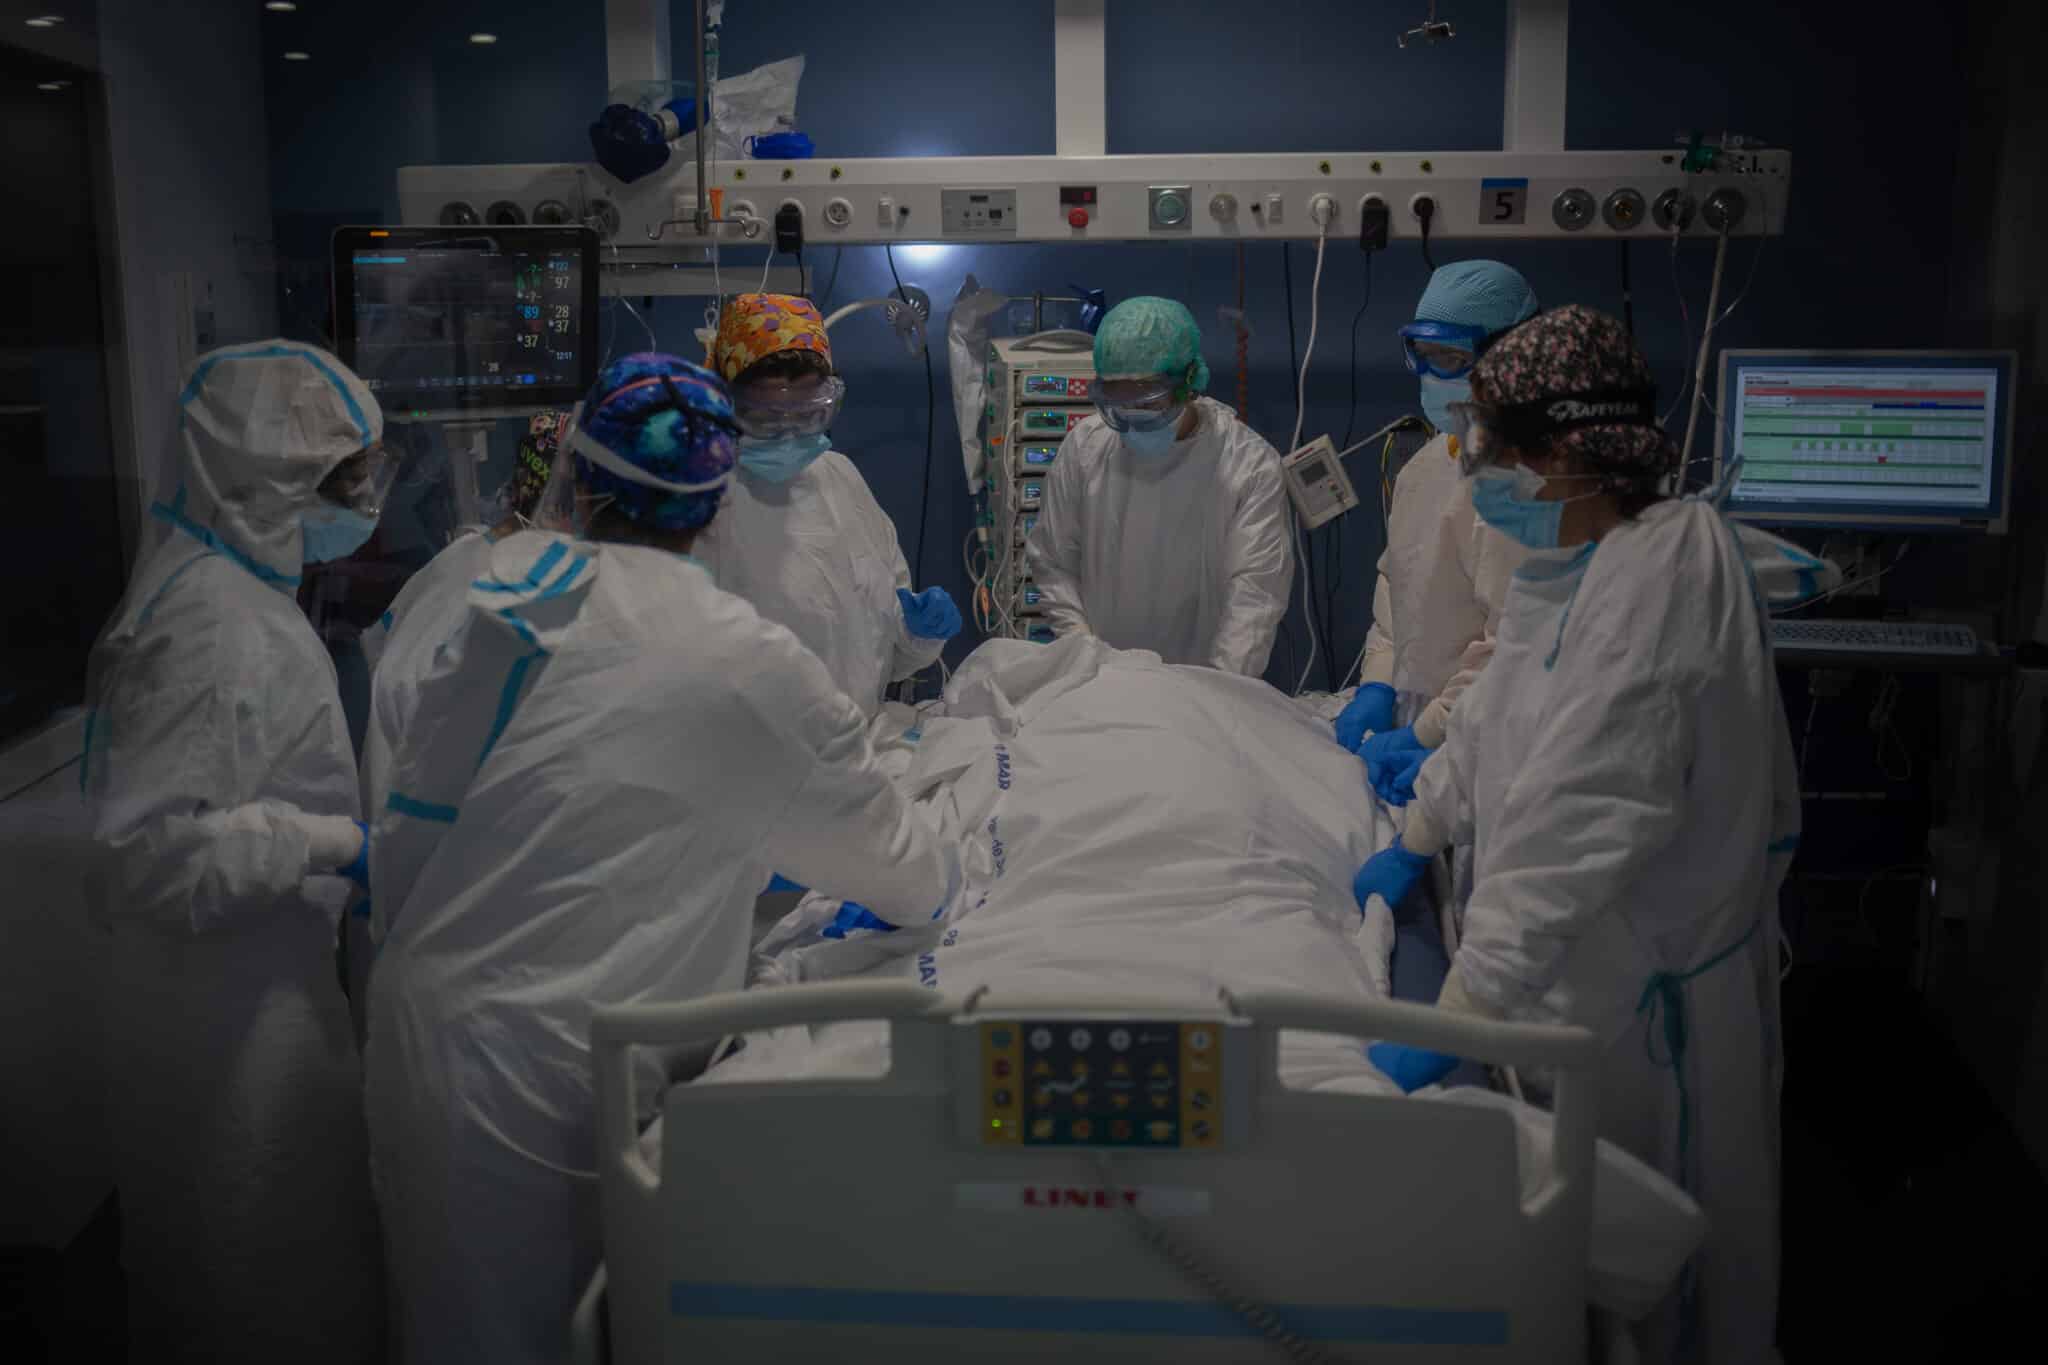 Trabajadores sanitarios protegidos atienden a un paciente en la UCI del Hospital del Mar, en Barcelona.